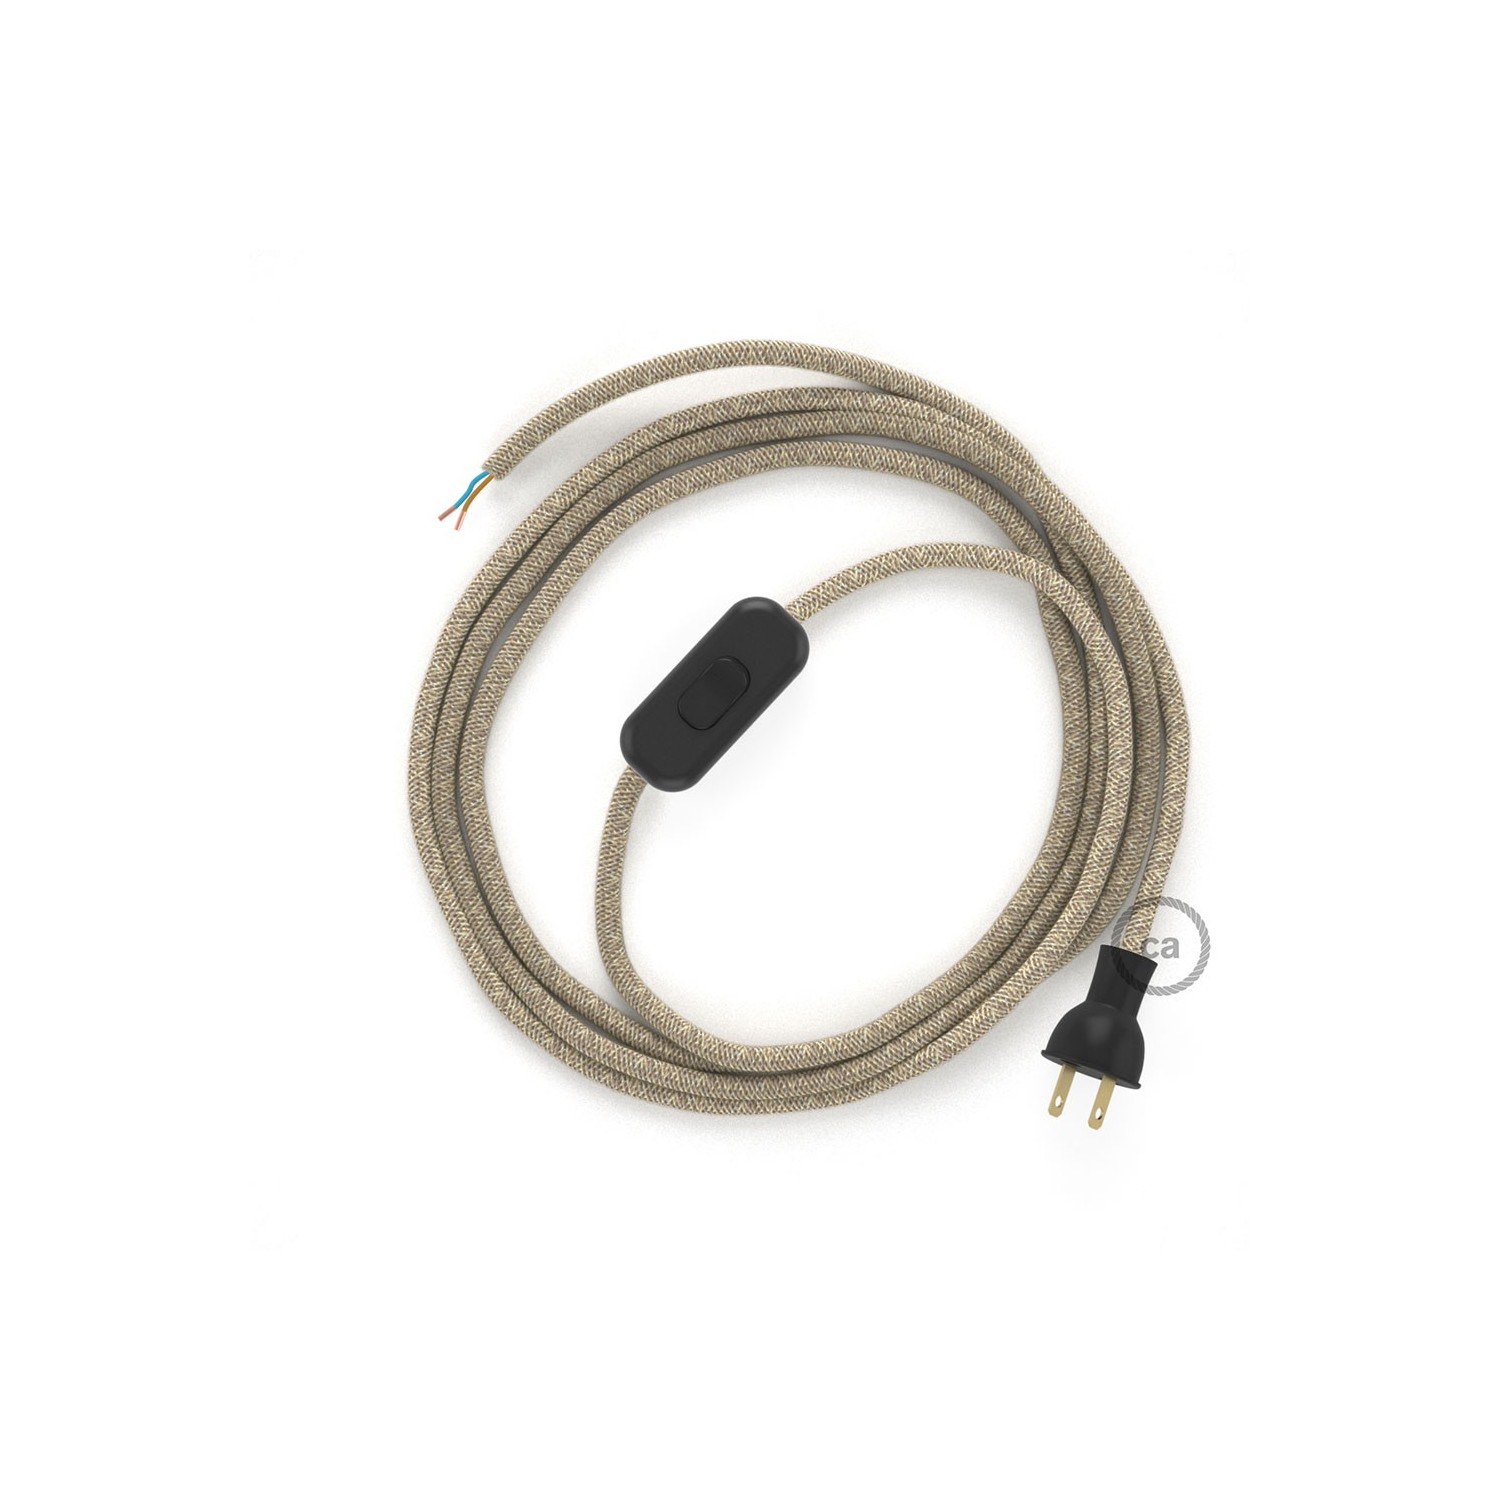 Cableado para lámpara de mesa, cable RN01 Lino Natural Neutro 1,8 m. Elige el color de la clavija y del interruptor!